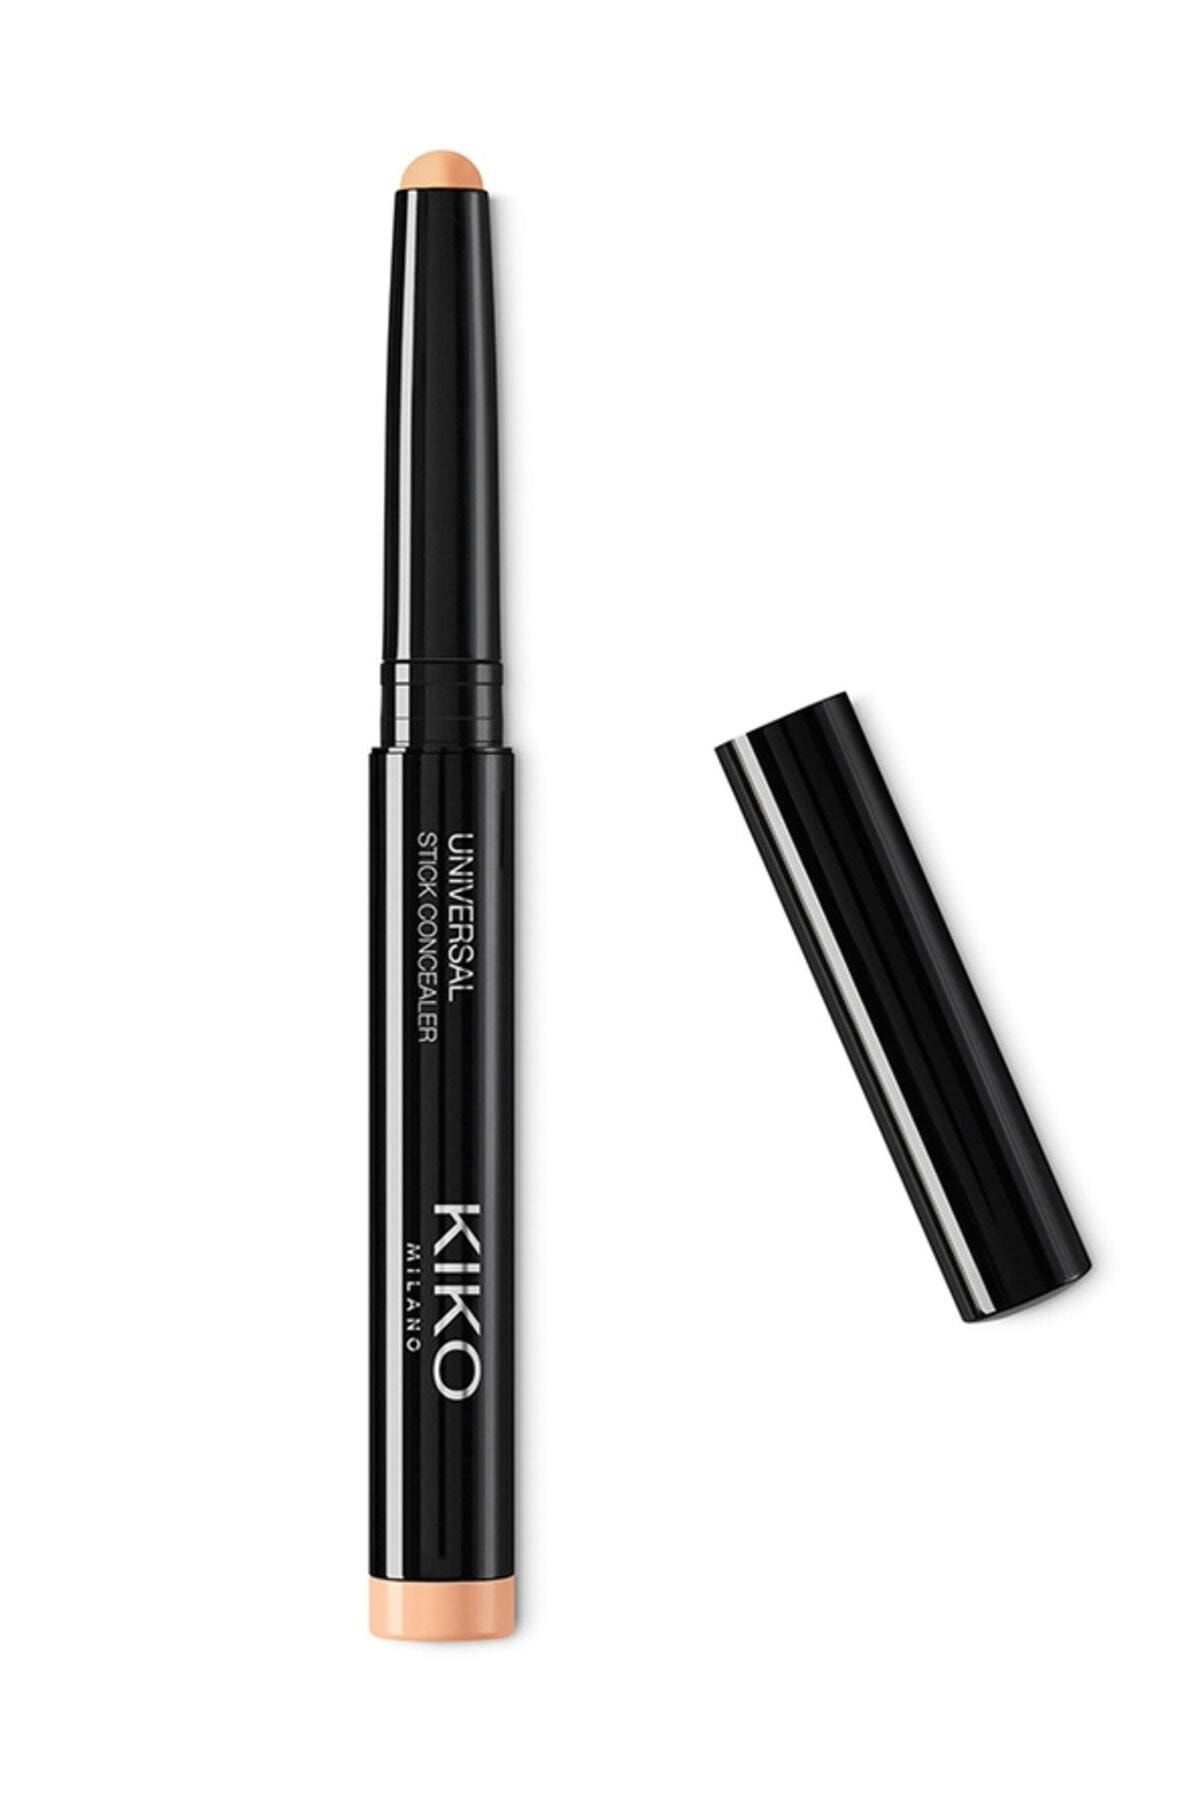 Kiko stick eyeshadow. Kiko Milano long lasting Eyeshadow Stick. Кико тени в стике. Kiko Milano long lasting Eyeshadow Stick 53. Кико тени карандаш для век.